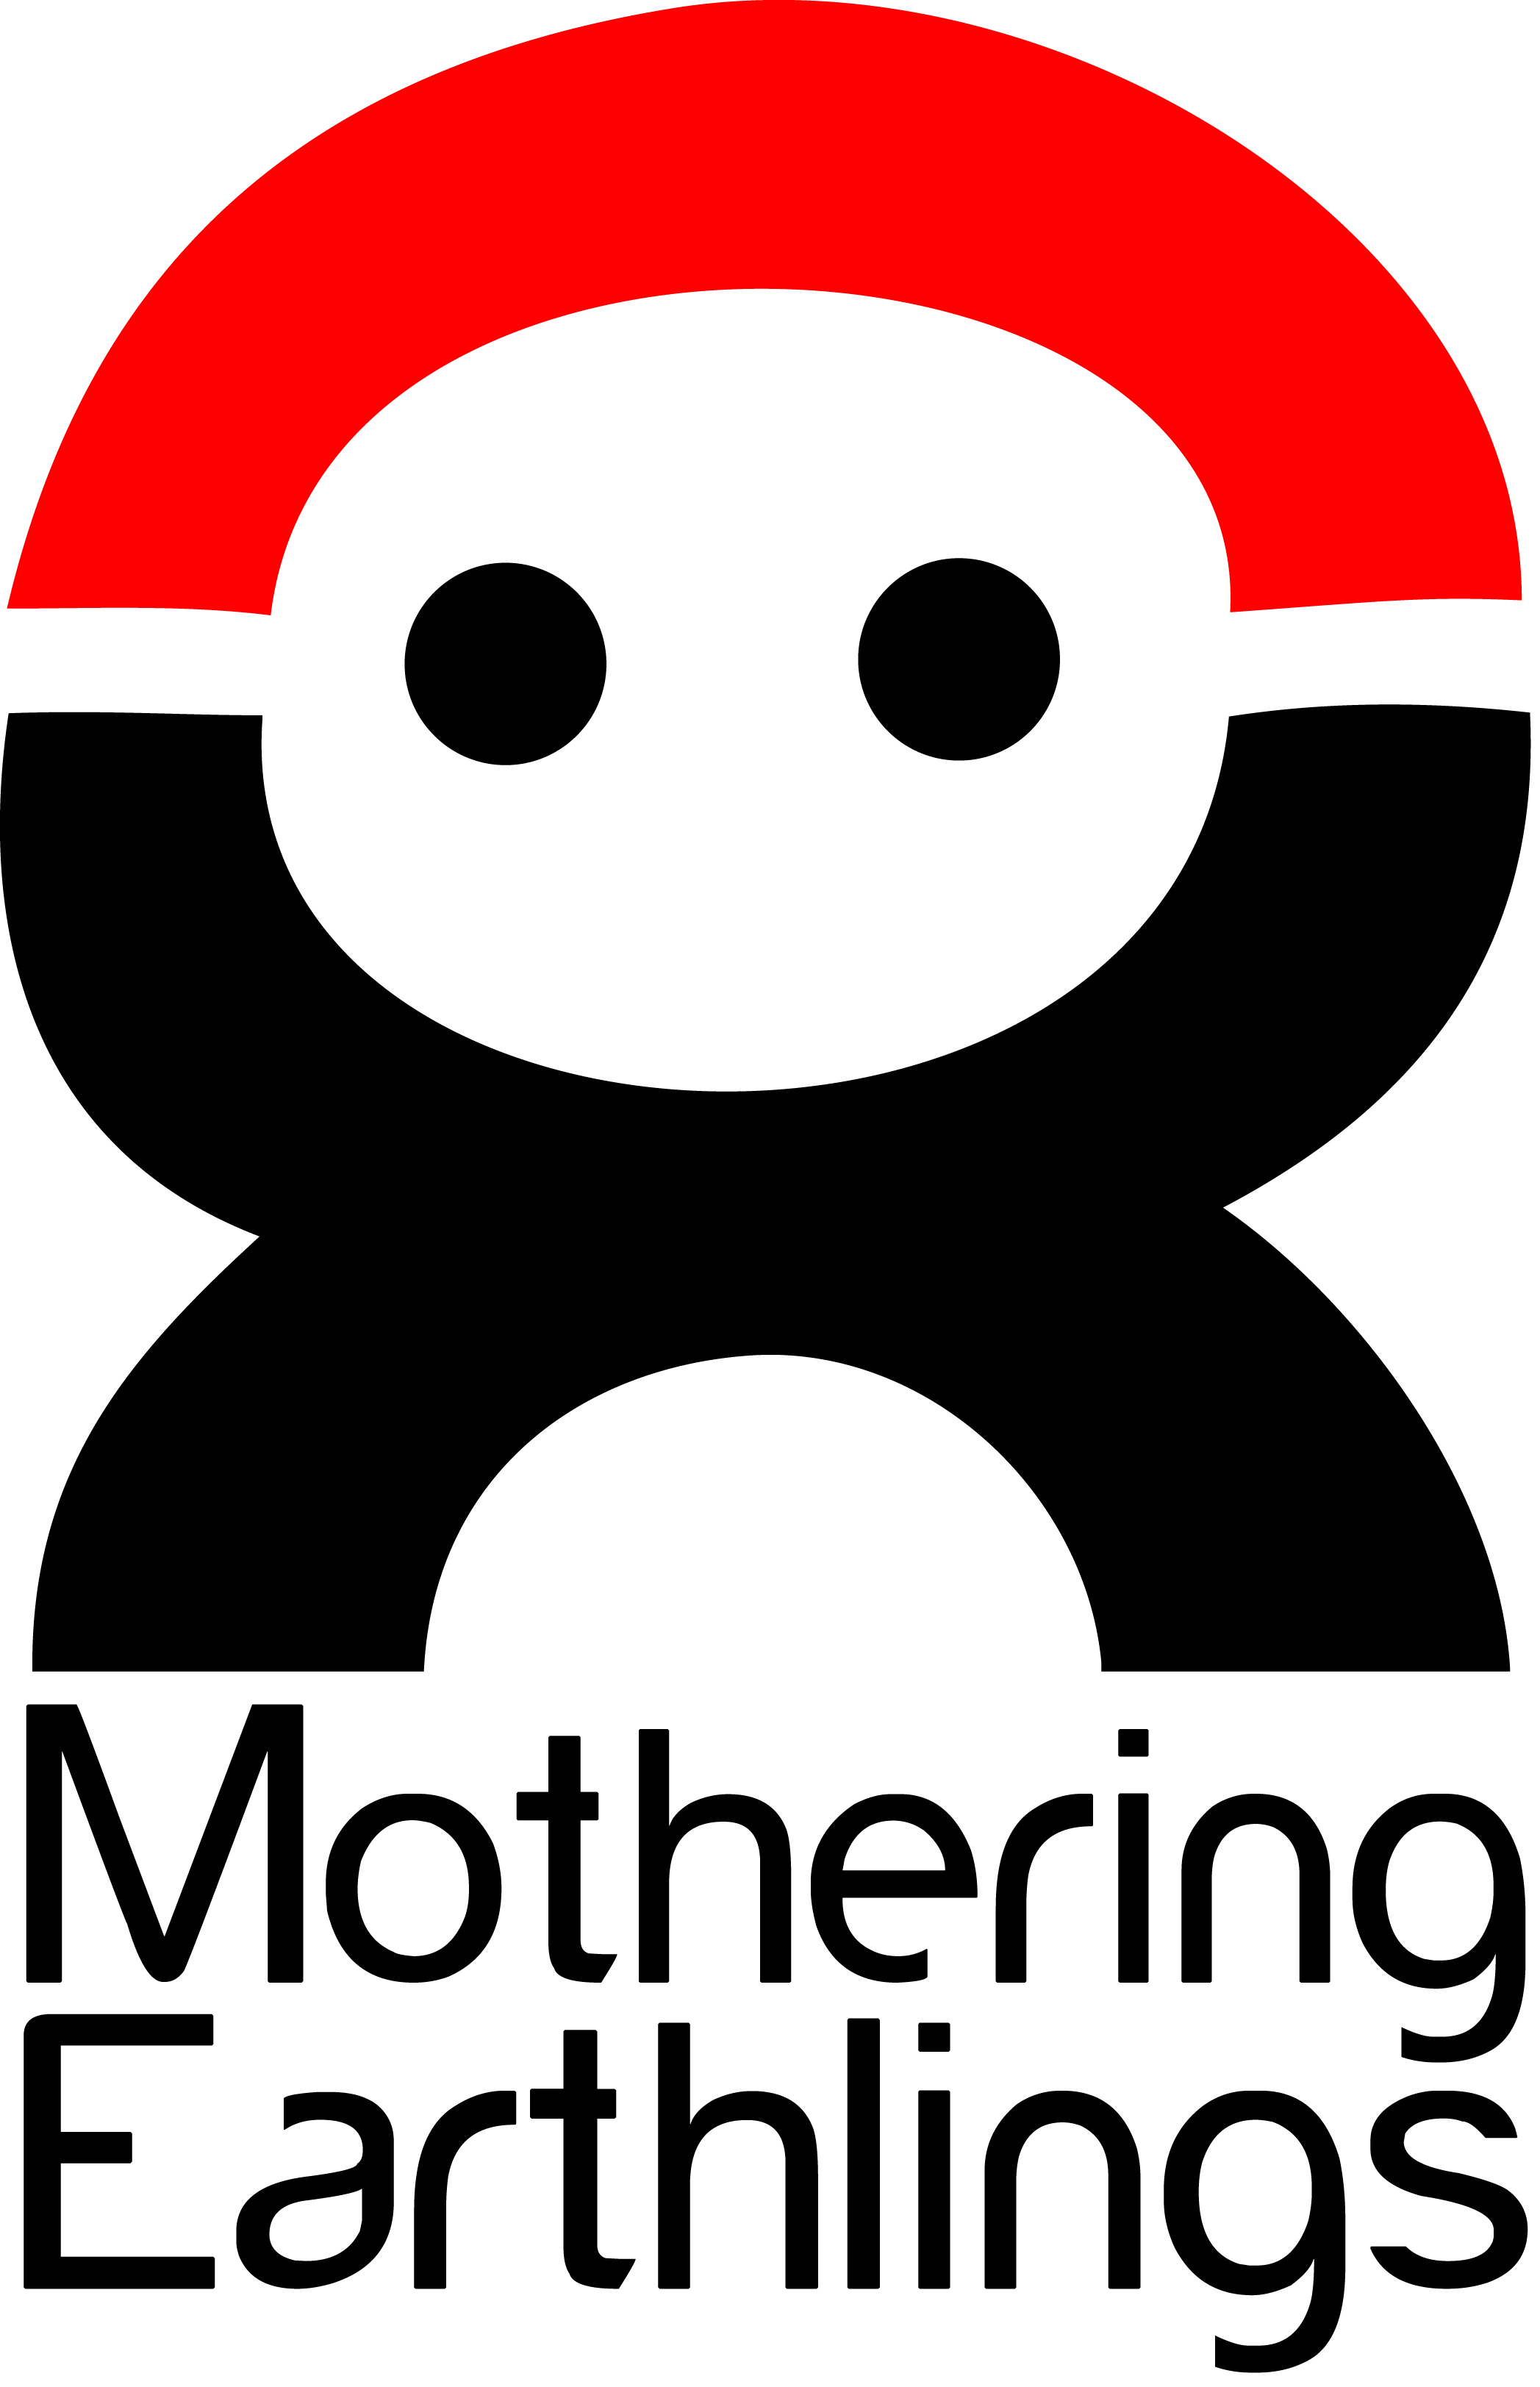 MotheringEarthlings-txtunder-red&black-.jpg